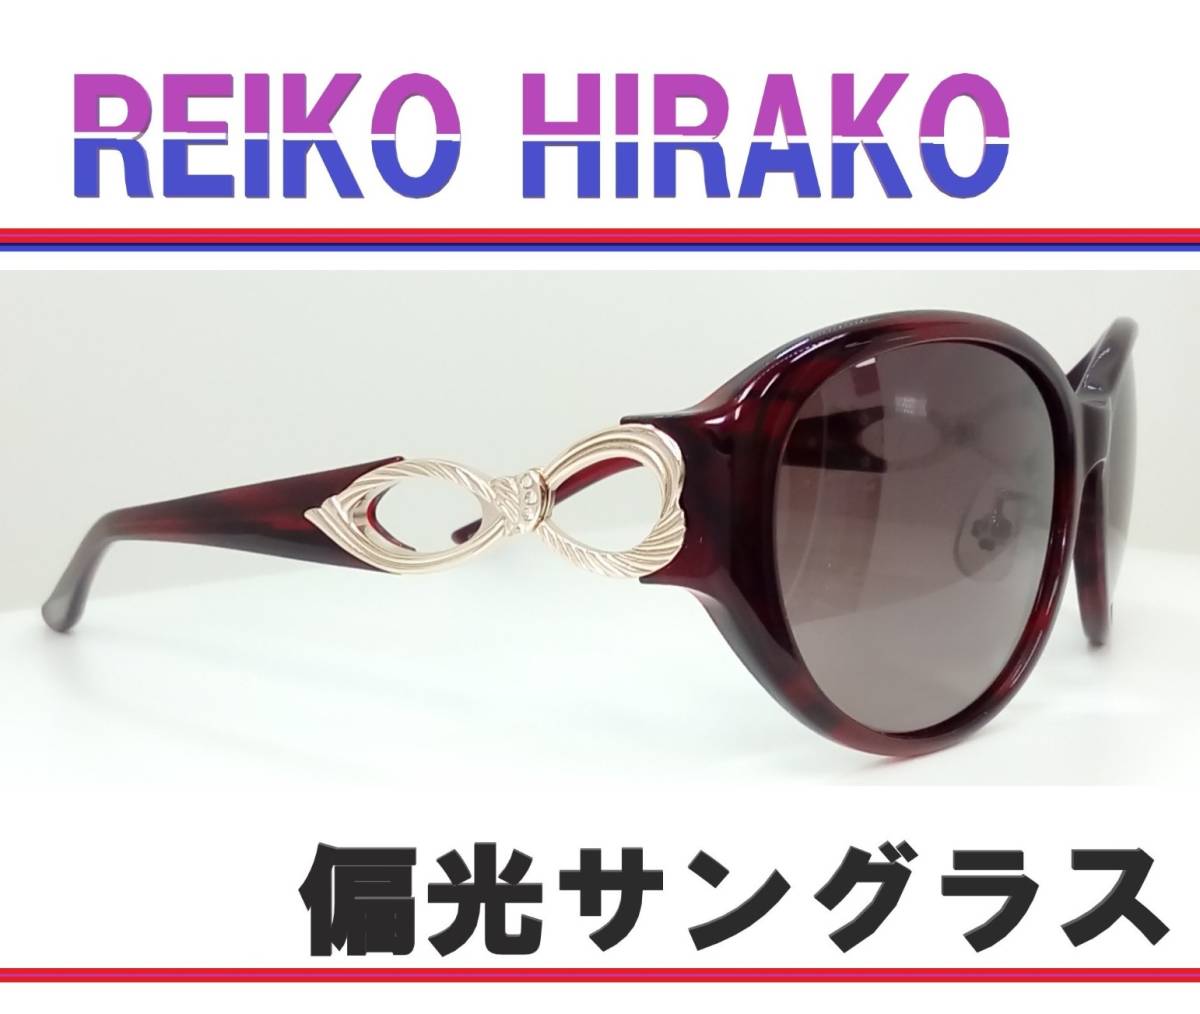 素敵でユニークな ◆REIKO HIRAKO レイコ ヒラコ　◆偏光サングラス　RS-2640-3（ワインササ）◆専用ケース付 セル、プラスチックフレーム